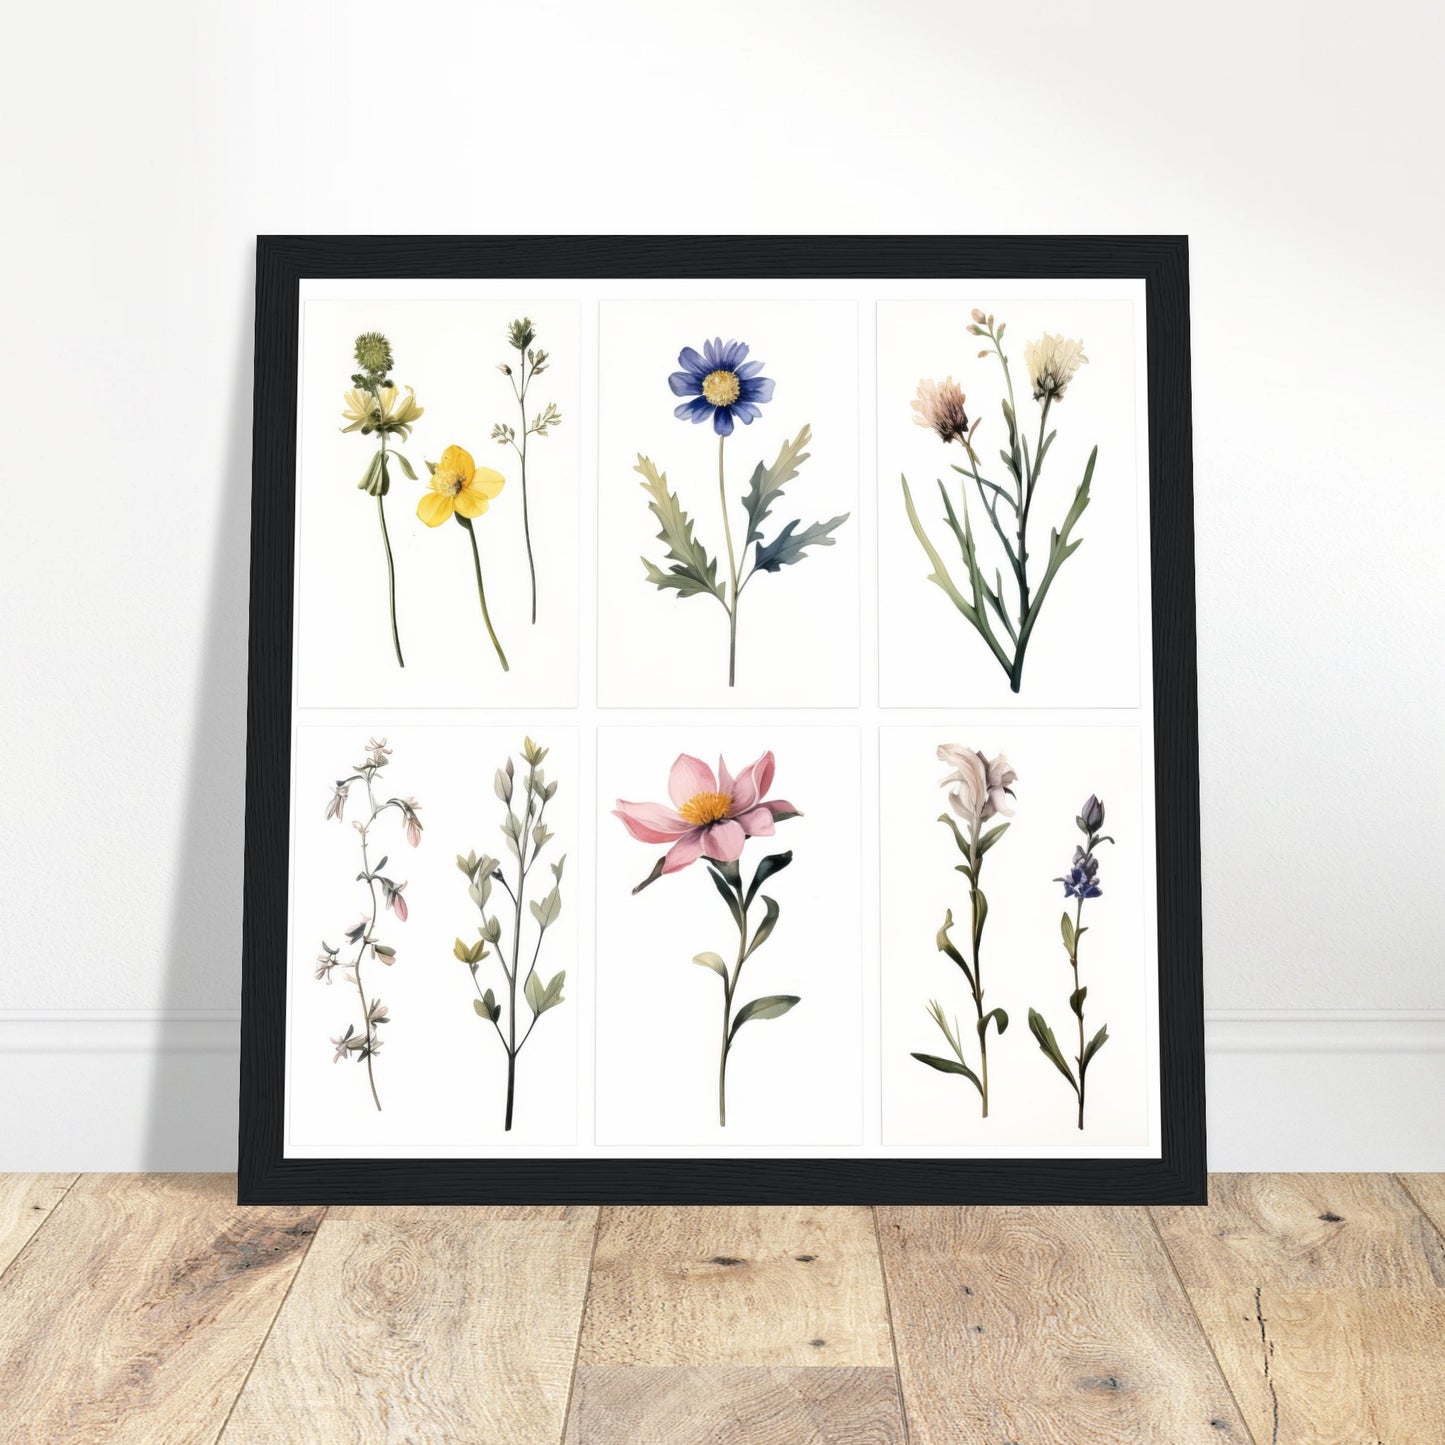 Elegance - Botanical Artwork #4- Print Room Ltd White frame 70x70 cm / 28x28"